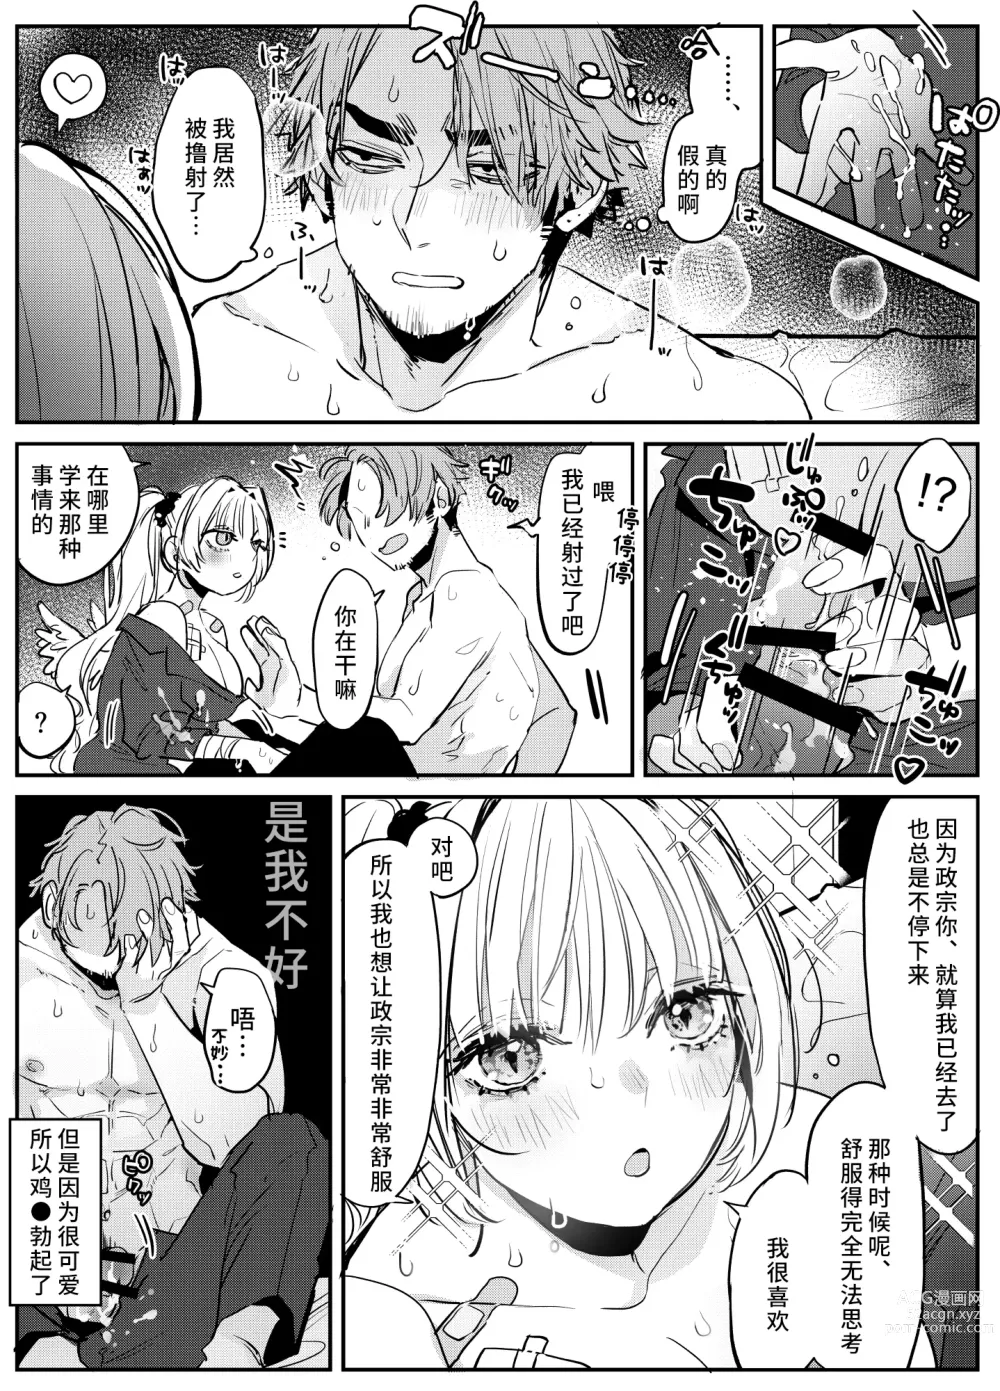 Page 2 of manga 关于沉浸在激烈口交游戏中将浓精射入嘴里的恋人的事